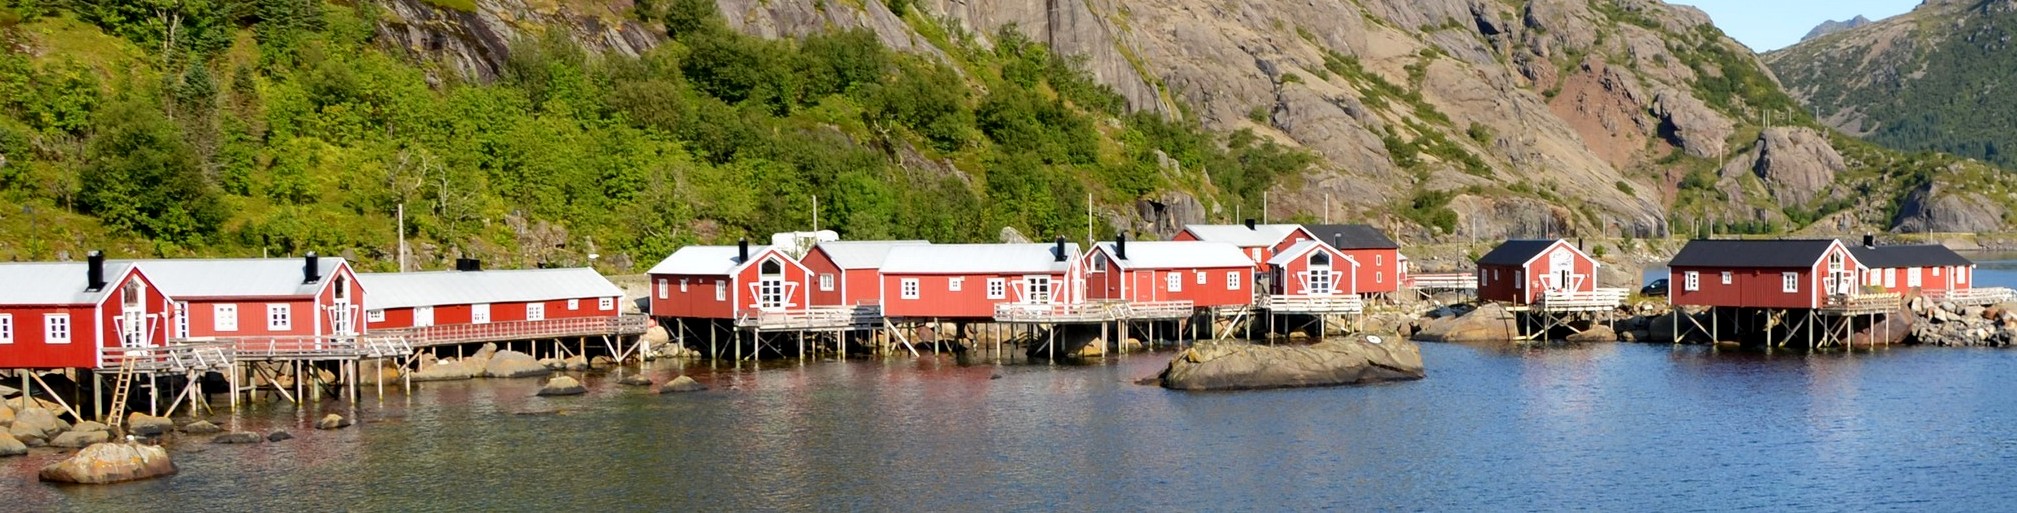 Základní informace o cestování do Norska